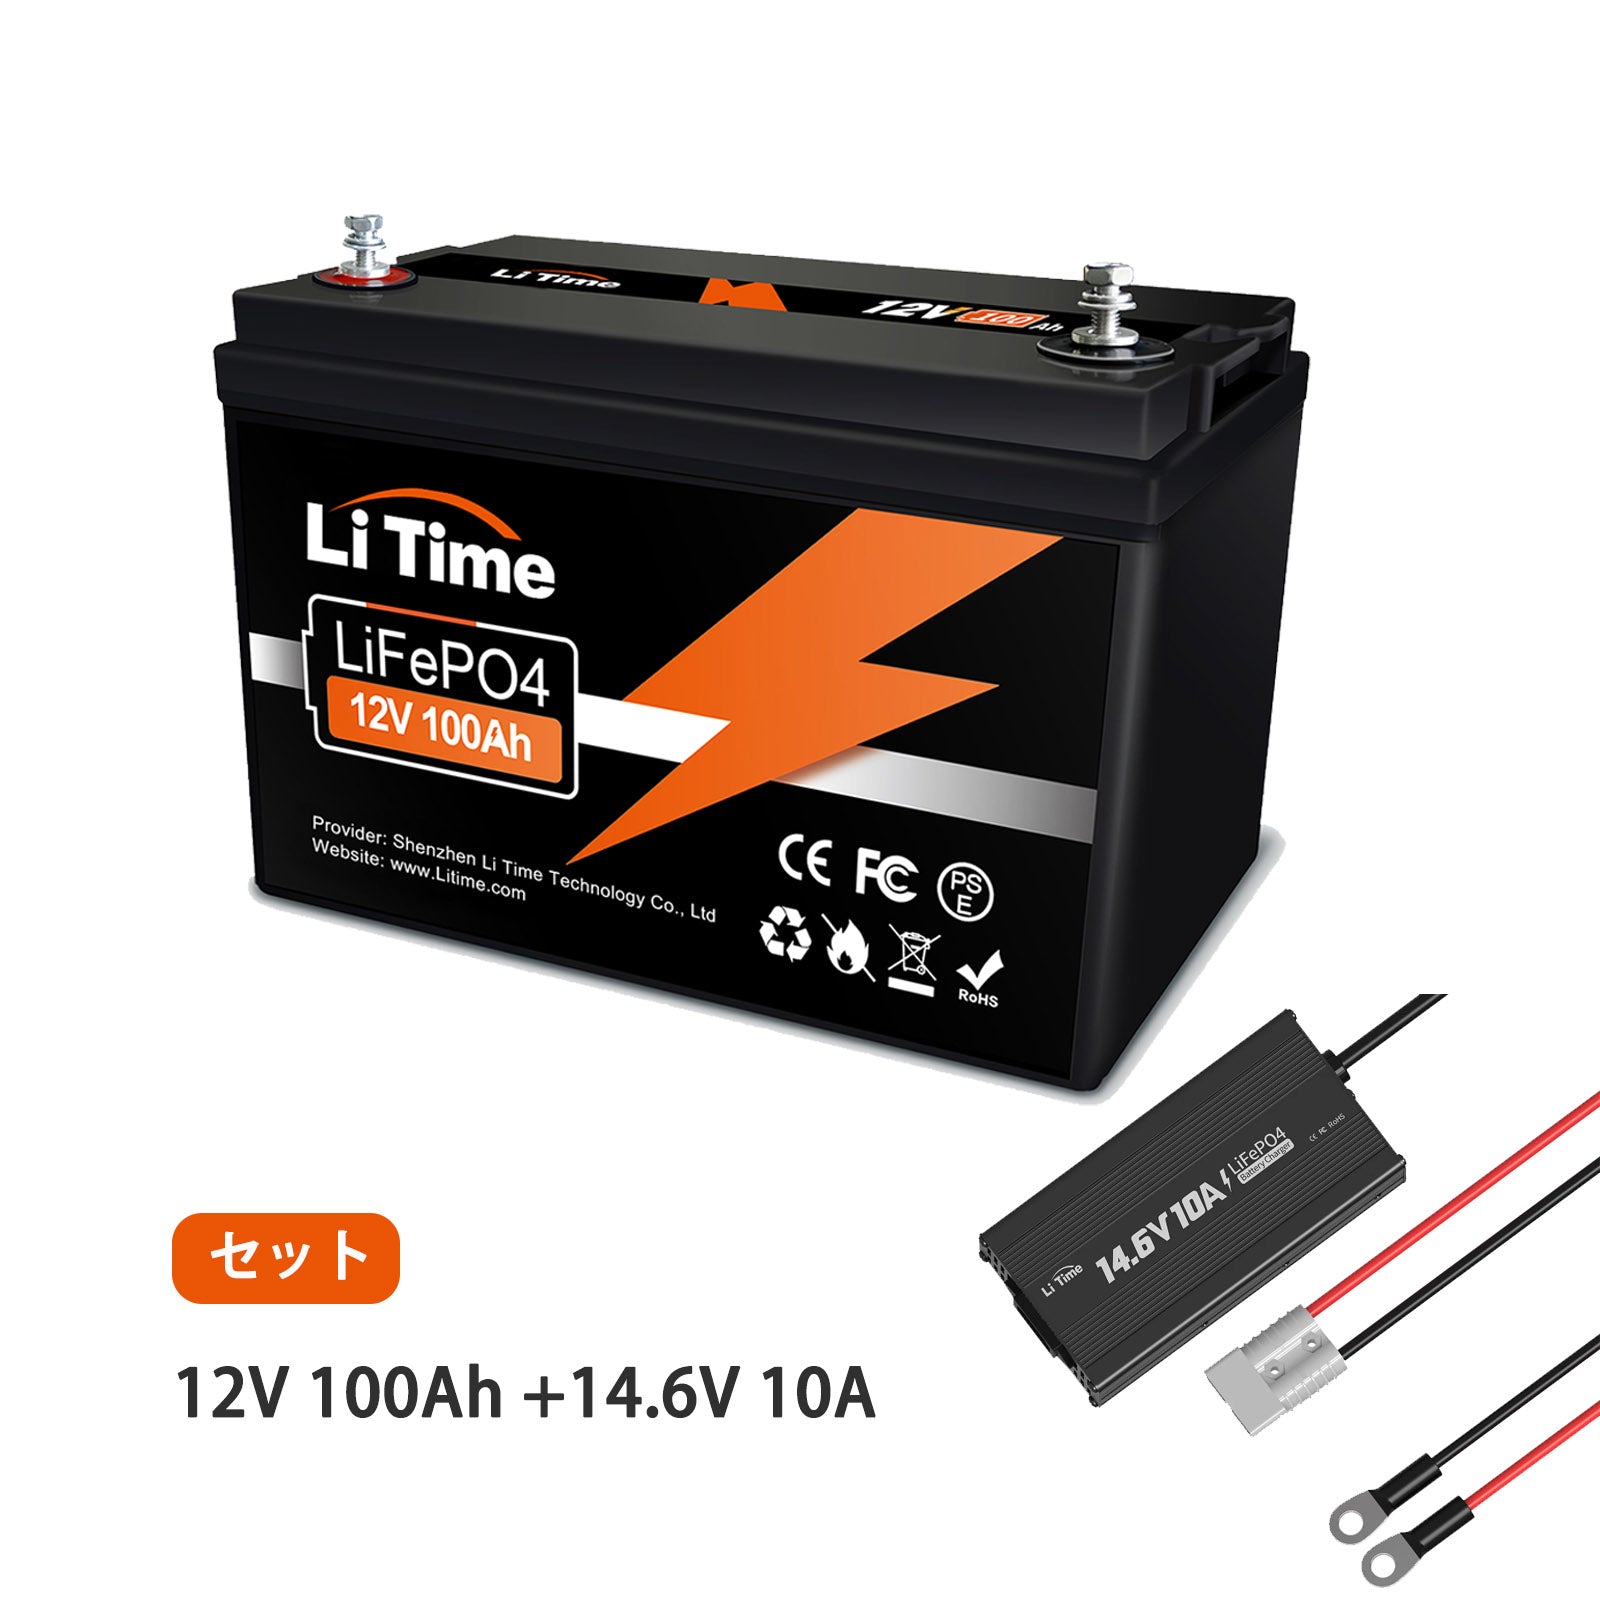 LiTime 12V 100Ah LiFePO4 リン酸鉄リチウムイオンバッテリー 内蔵100A BMS - 100Ah+10A 充電器  別発送（1000円割引）